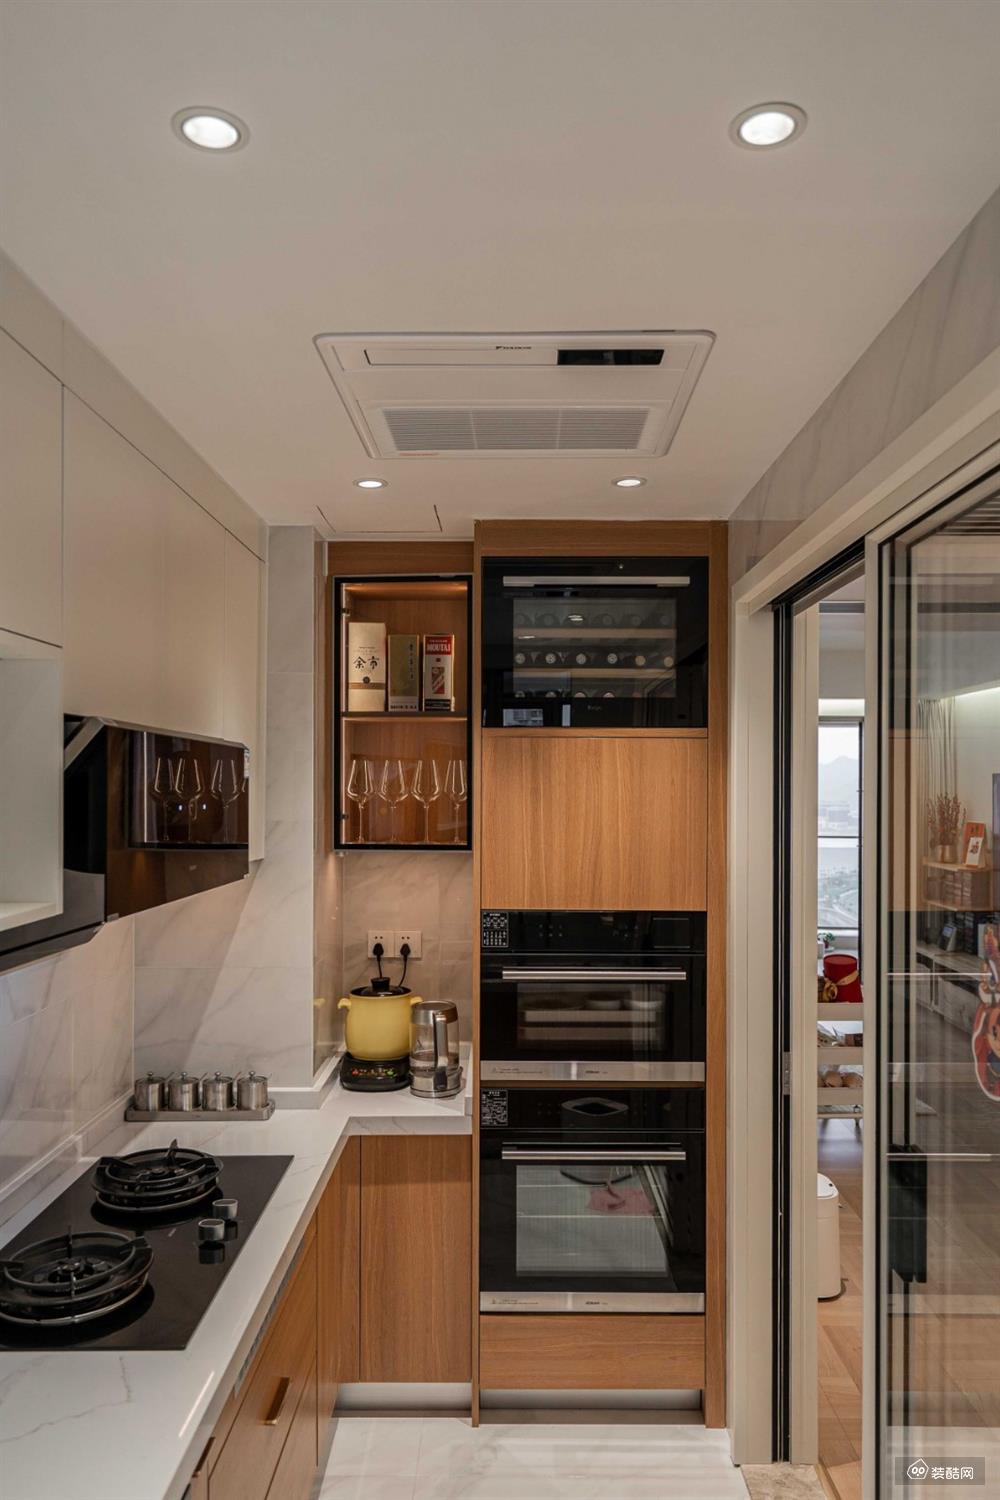 厨房采用u字型布局,冰箱外置增大了厨房的视觉和操作空间,电器除了